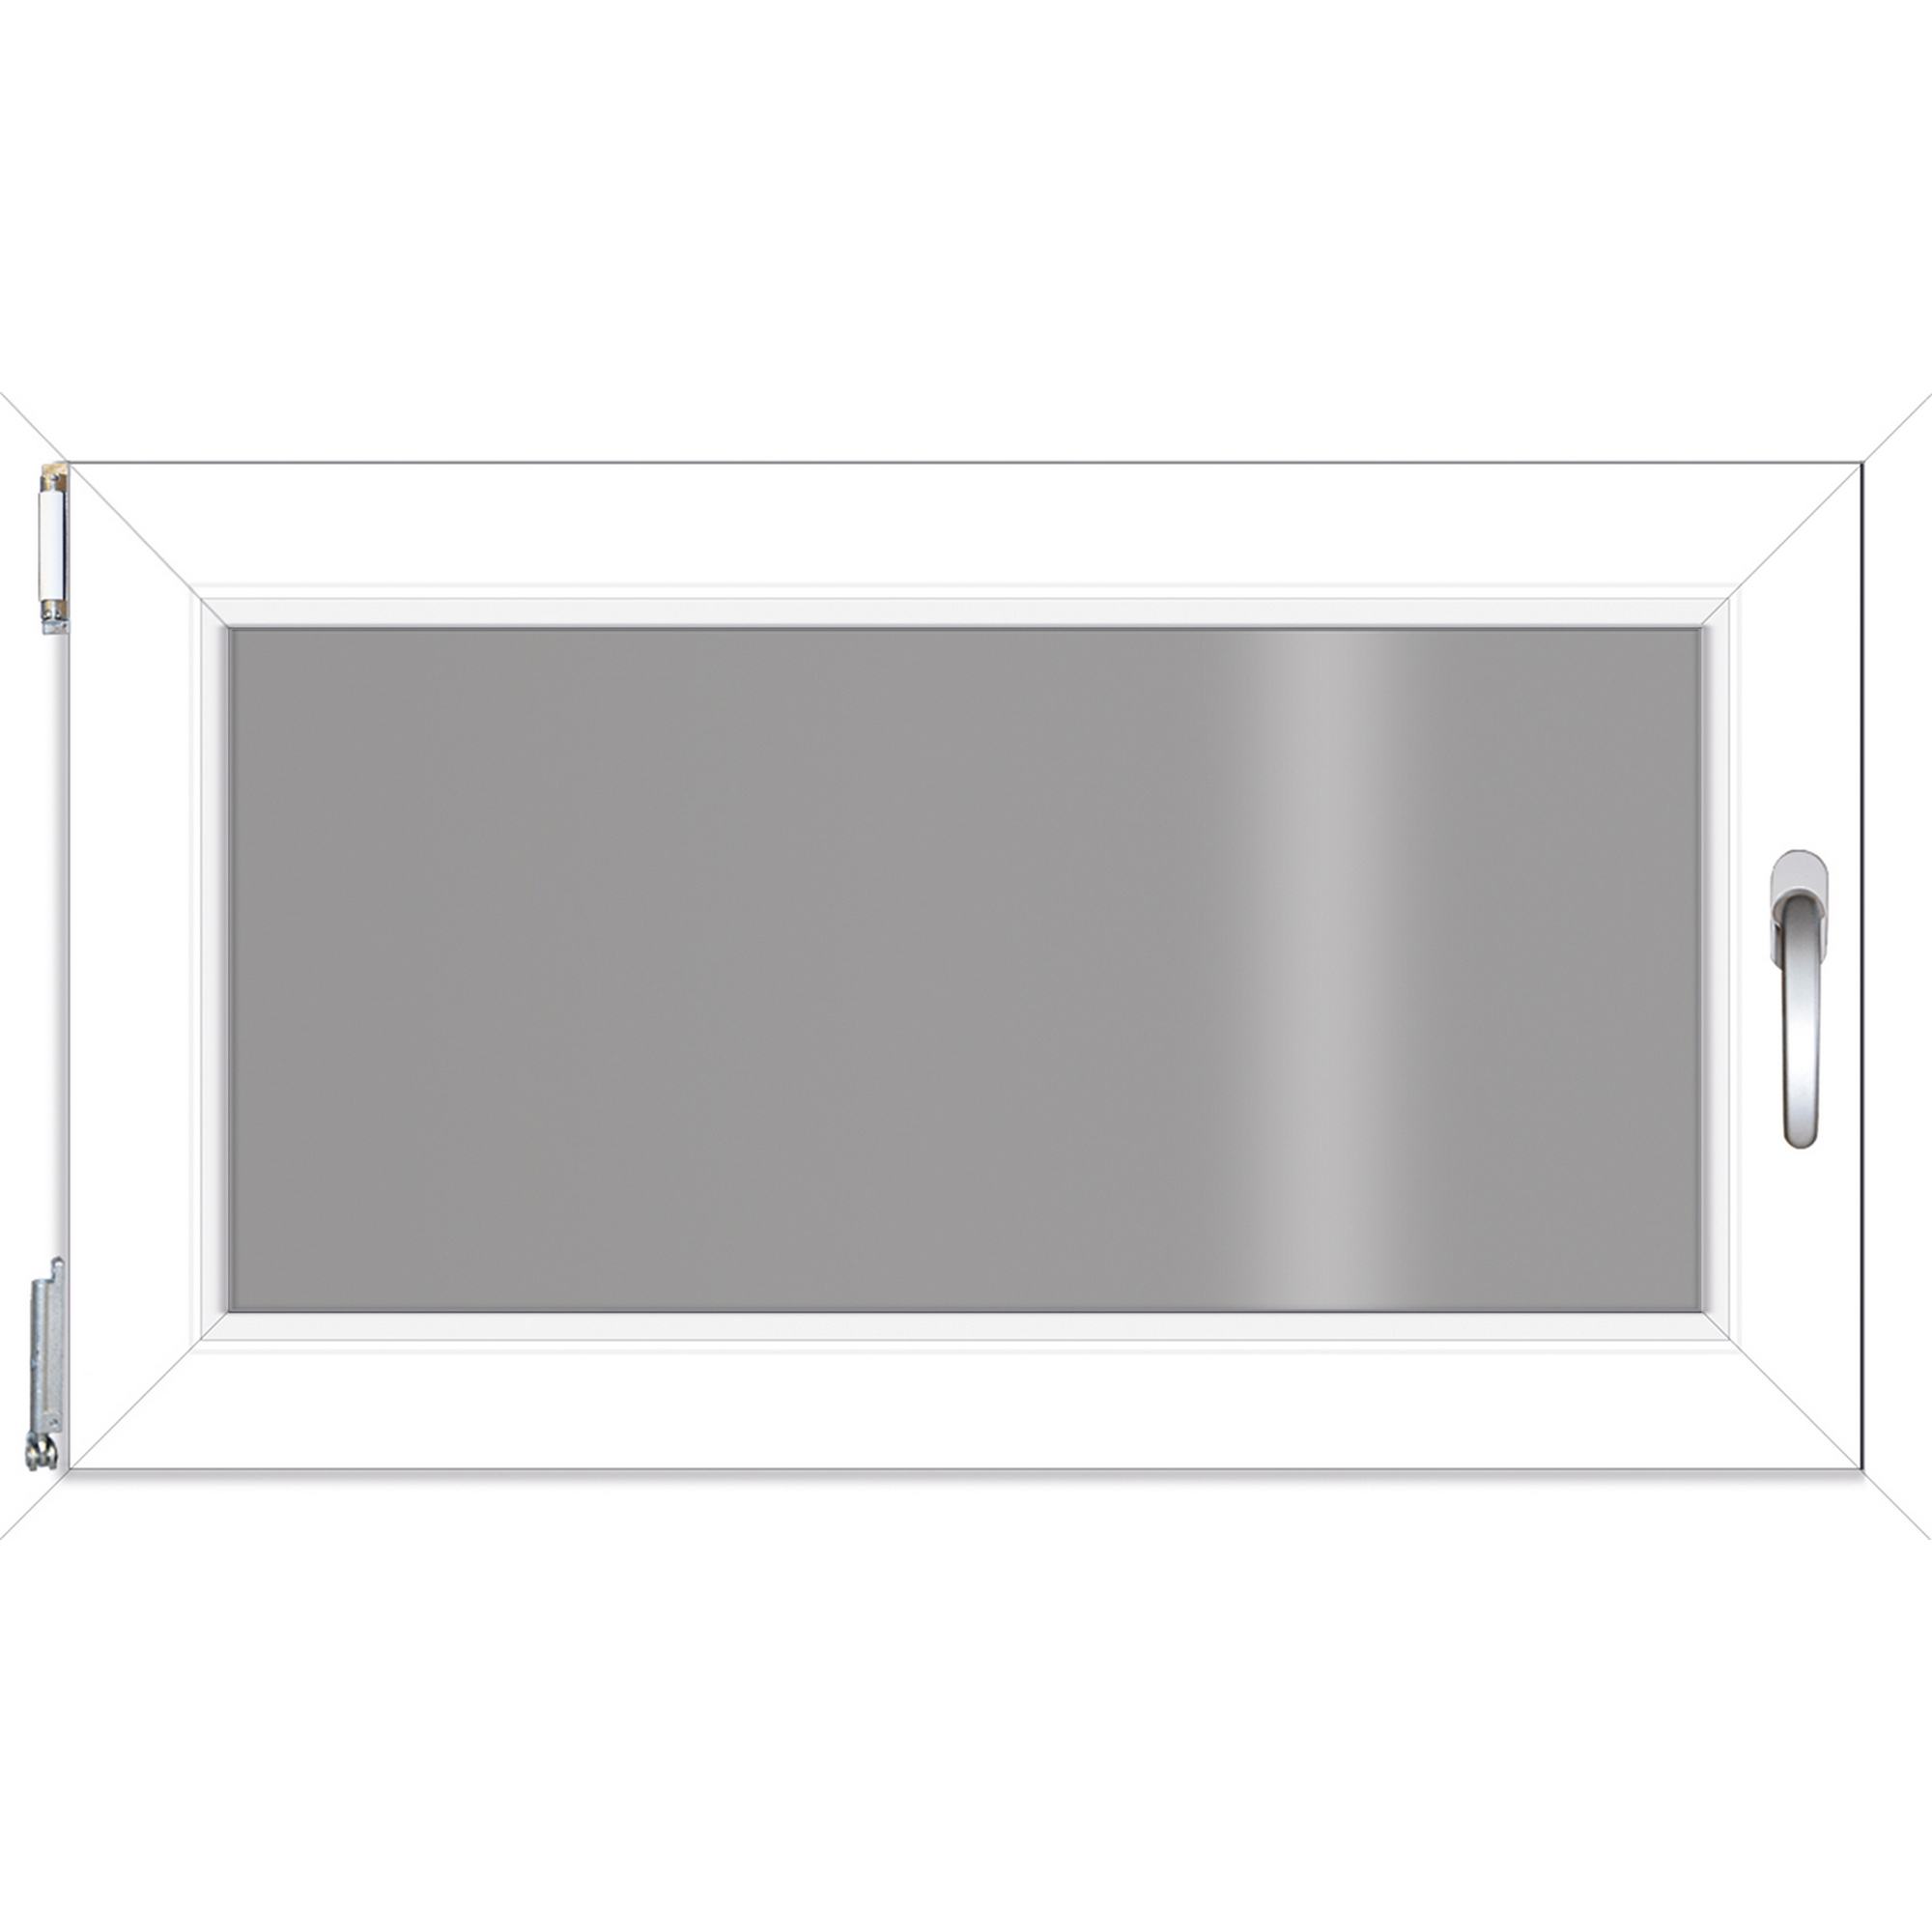 Kunststofffenster weiß 100 x 60 cm, 3-fach Verglasung + product picture